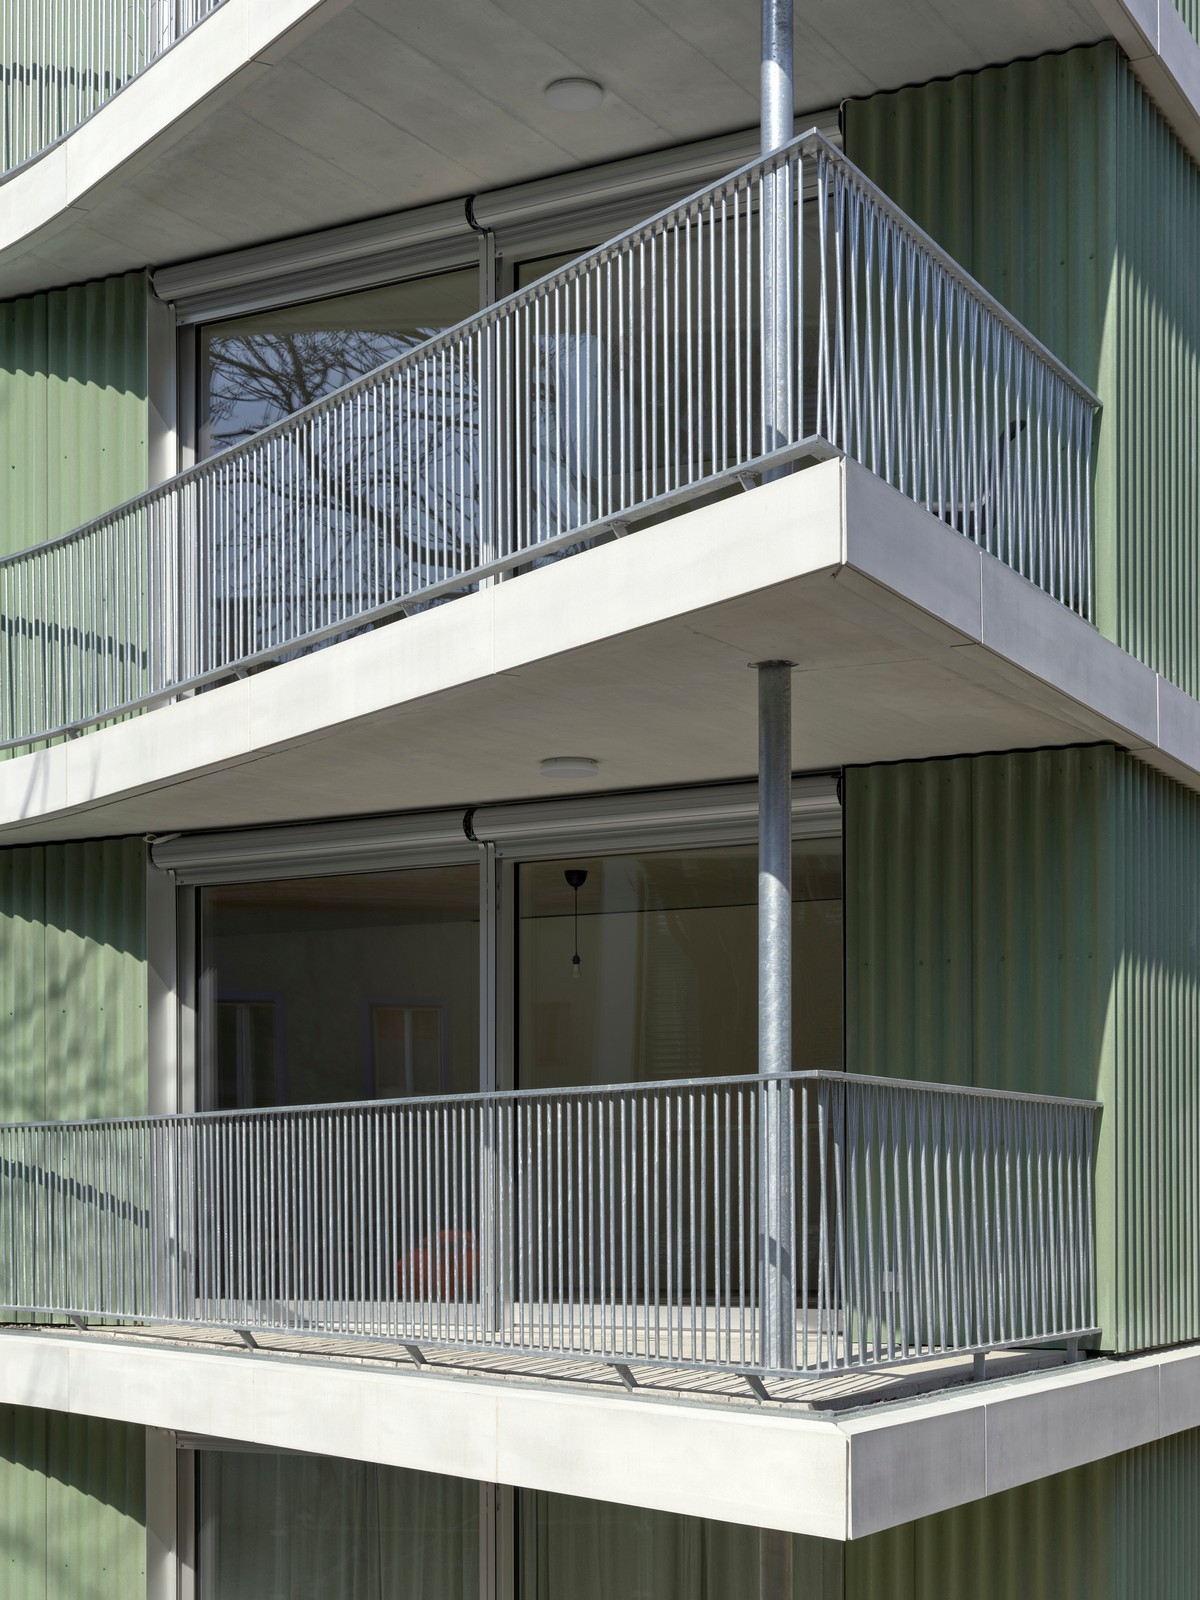 Многоквартирный жилой дом в Швейцарии